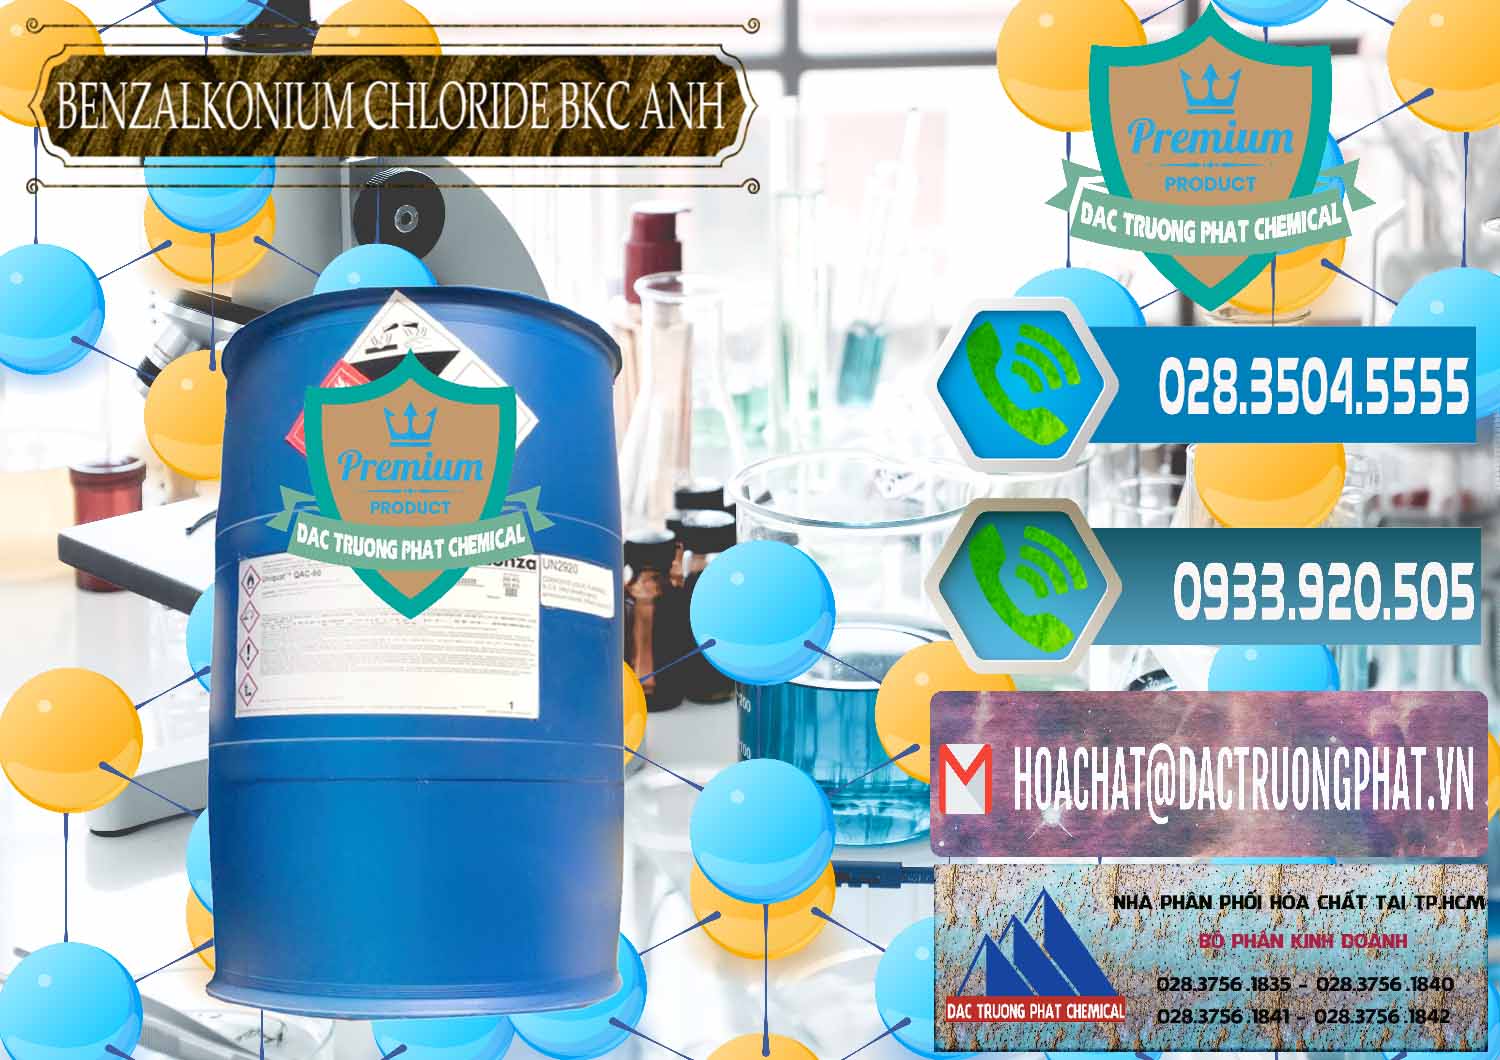 Nơi bán - phân phối BKC - Benzalkonium Chloride 80% Anh Quốc Uk Kingdoms - 0457 - Công ty chuyên kinh doanh ( cung cấp ) hóa chất tại TP.HCM - congtyhoachat.net